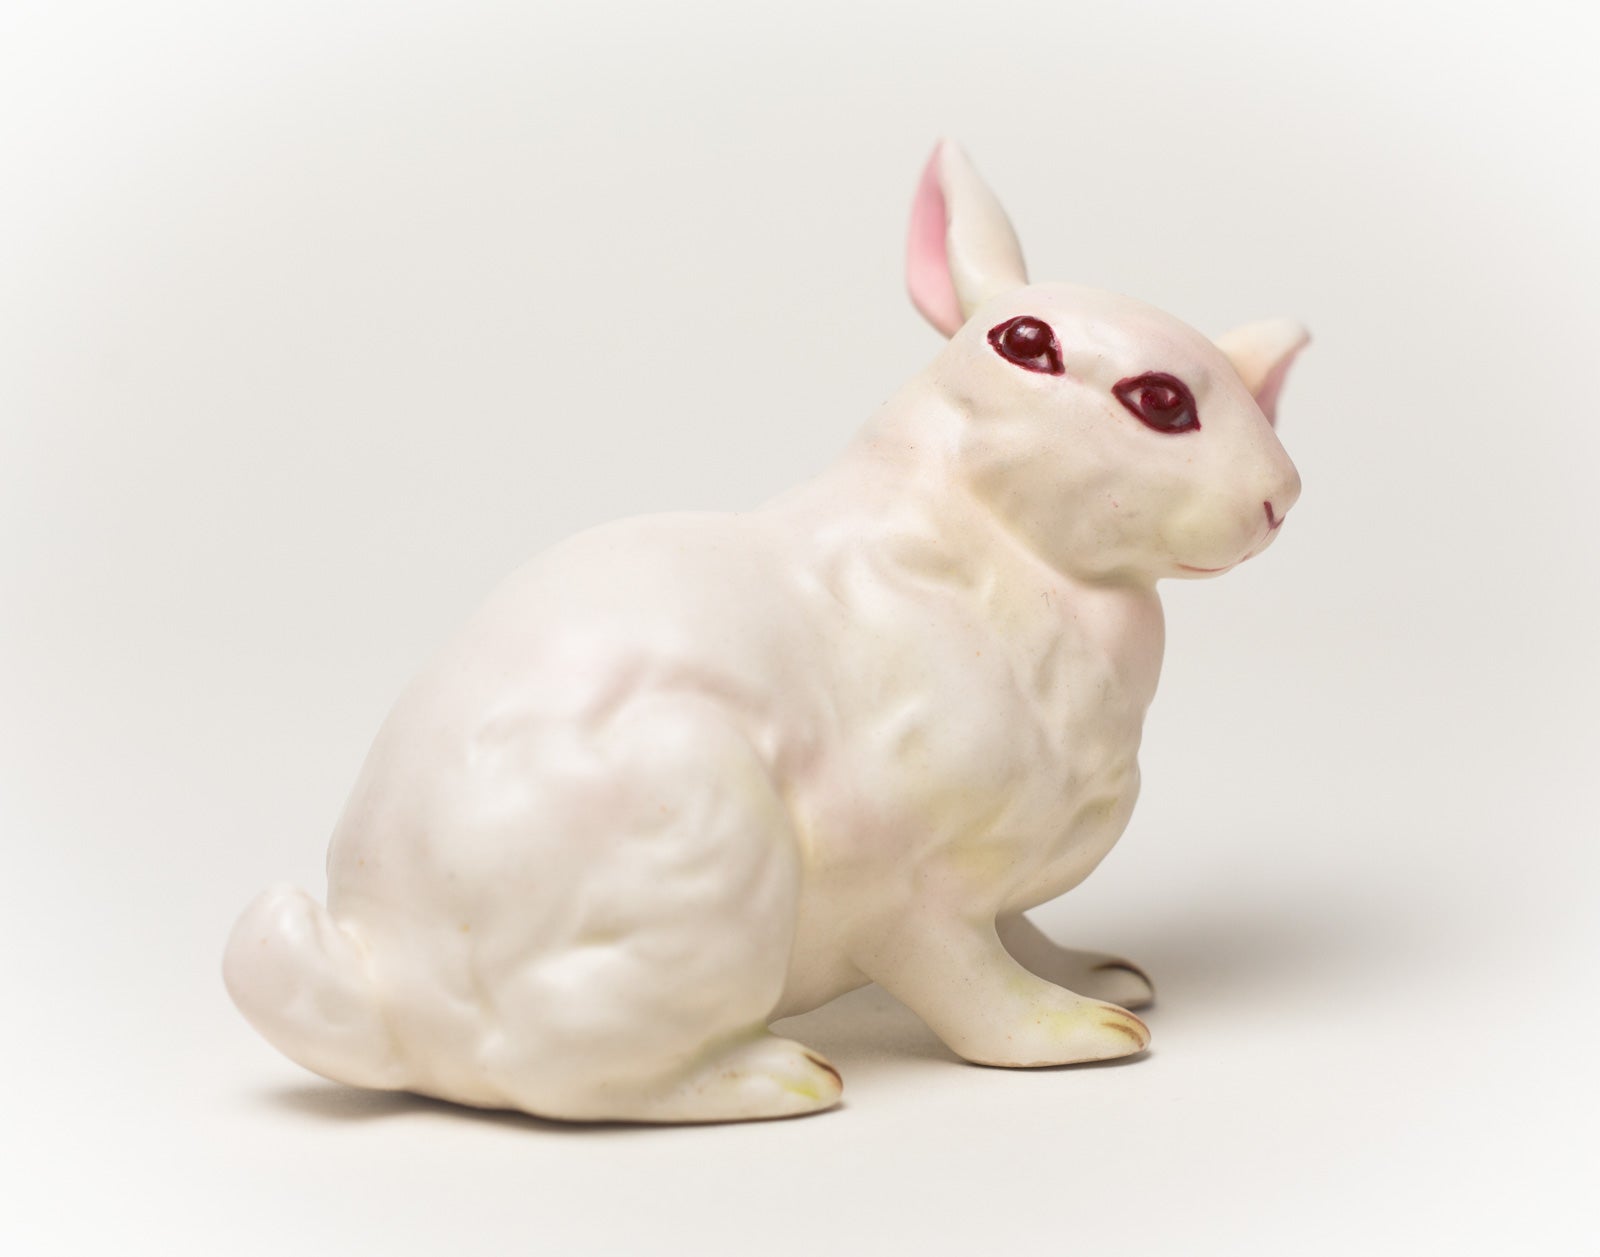 Debra Broz – White Rabbit, No. 12, 2019